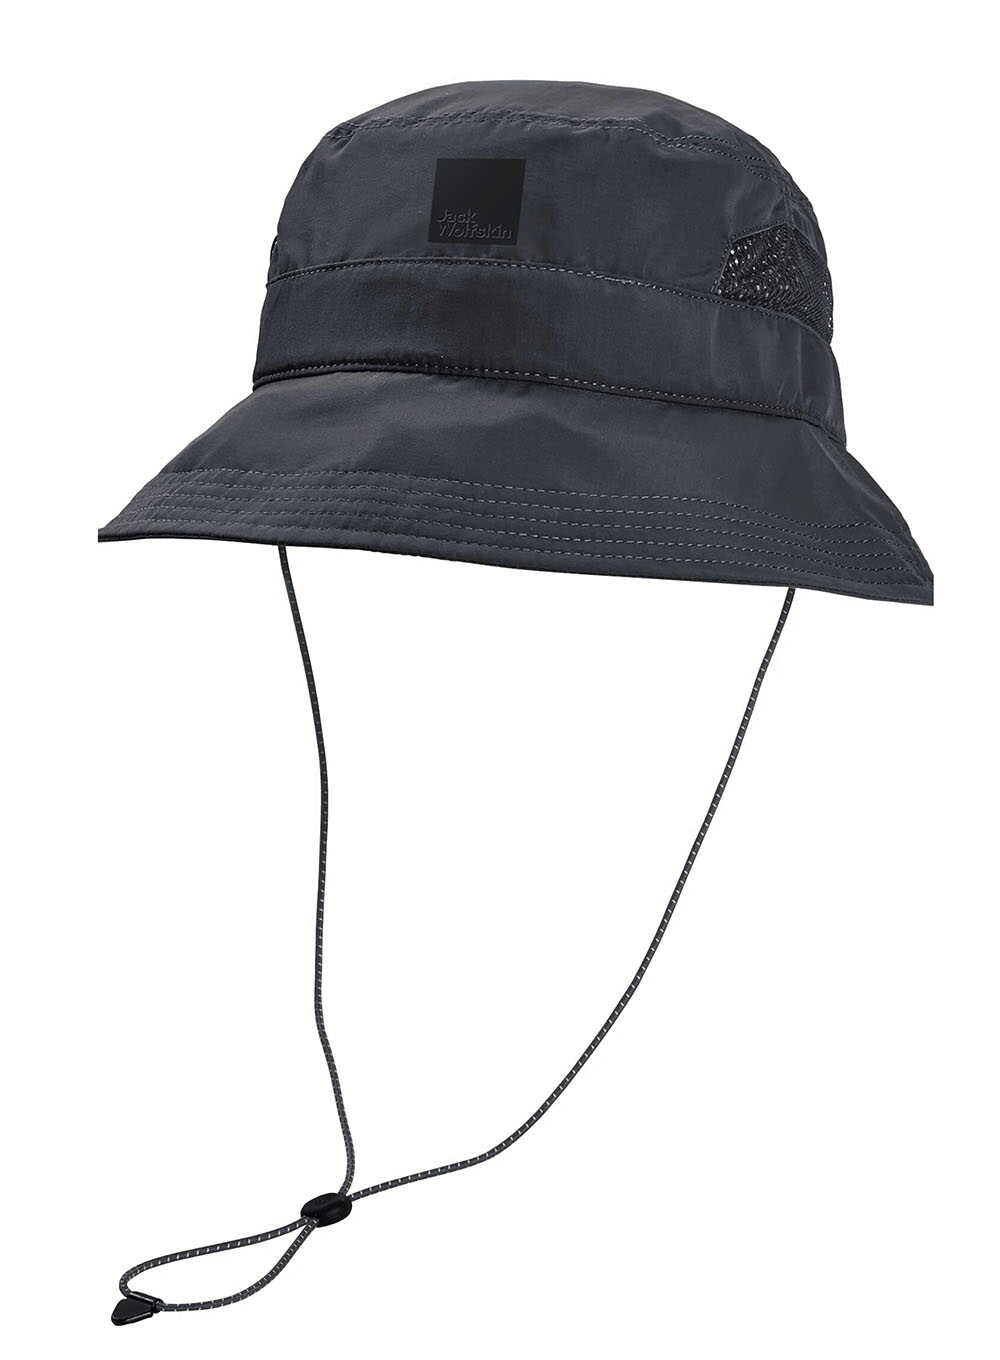 Kapelusz przeciwsłoneczny Jack Wolfskin Vent Bucket Hat - phantom